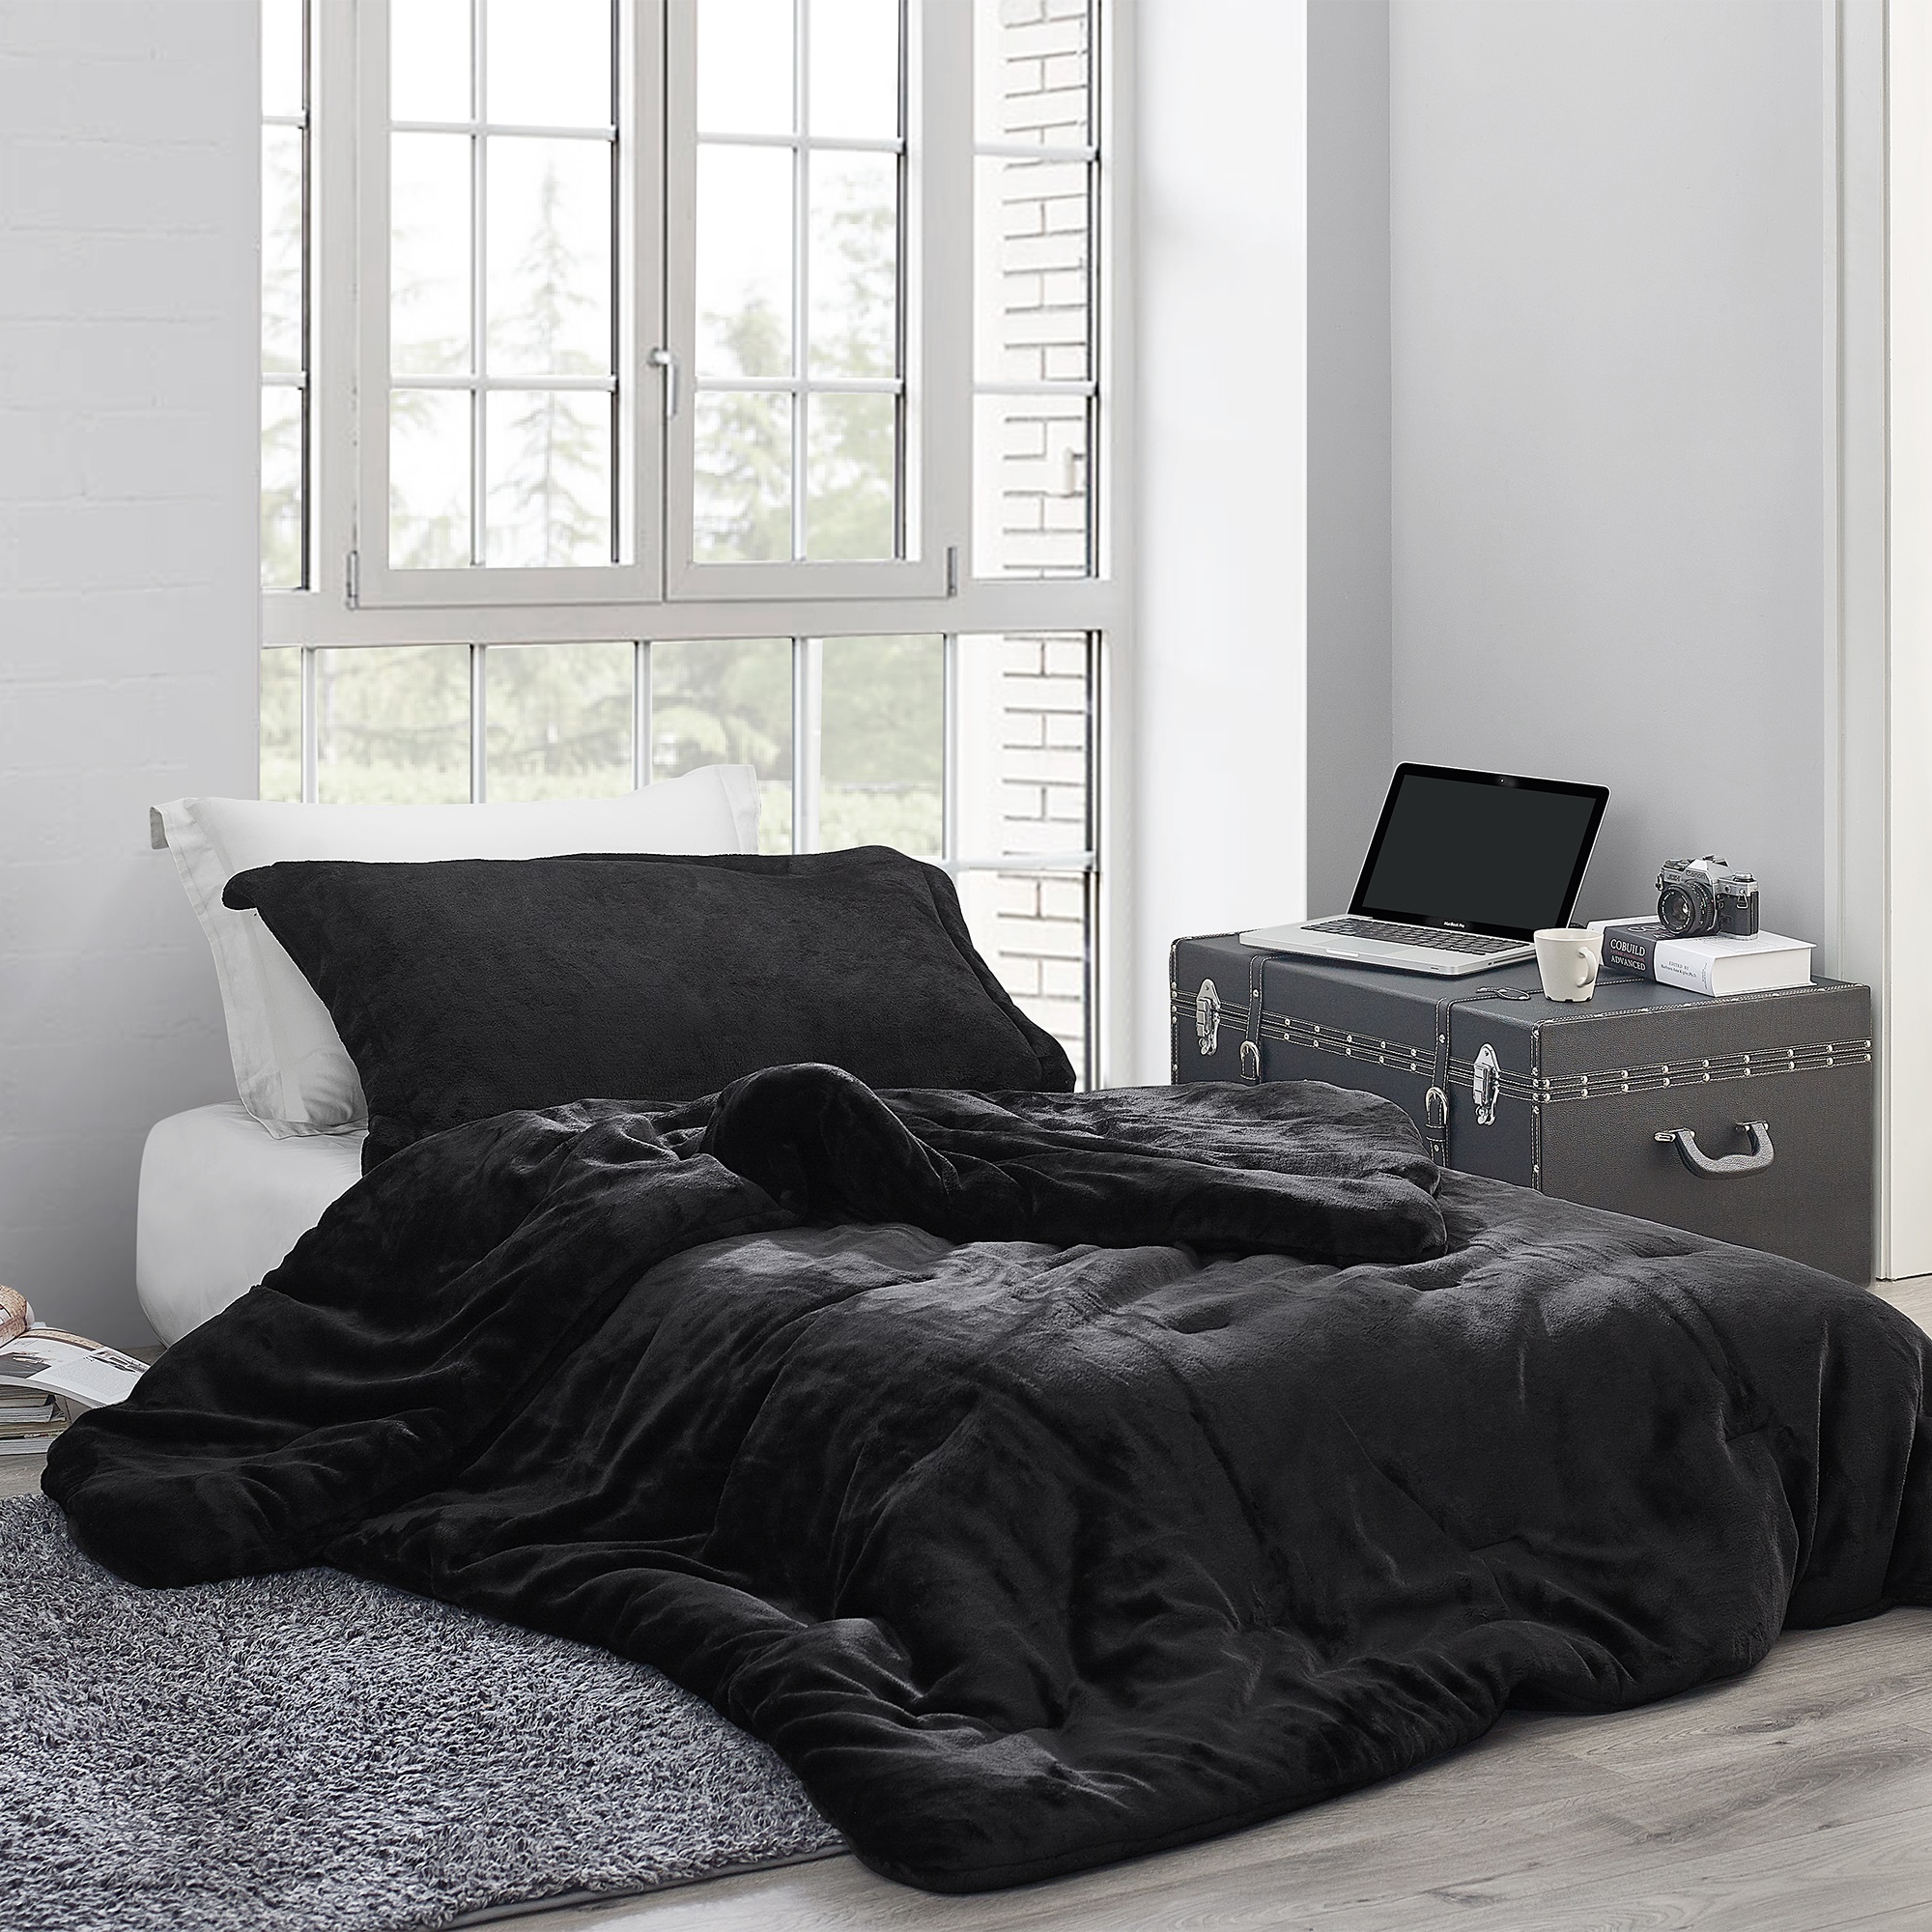 Coma Inducer Oversized Comforter - Me Sooo Comfy - Black